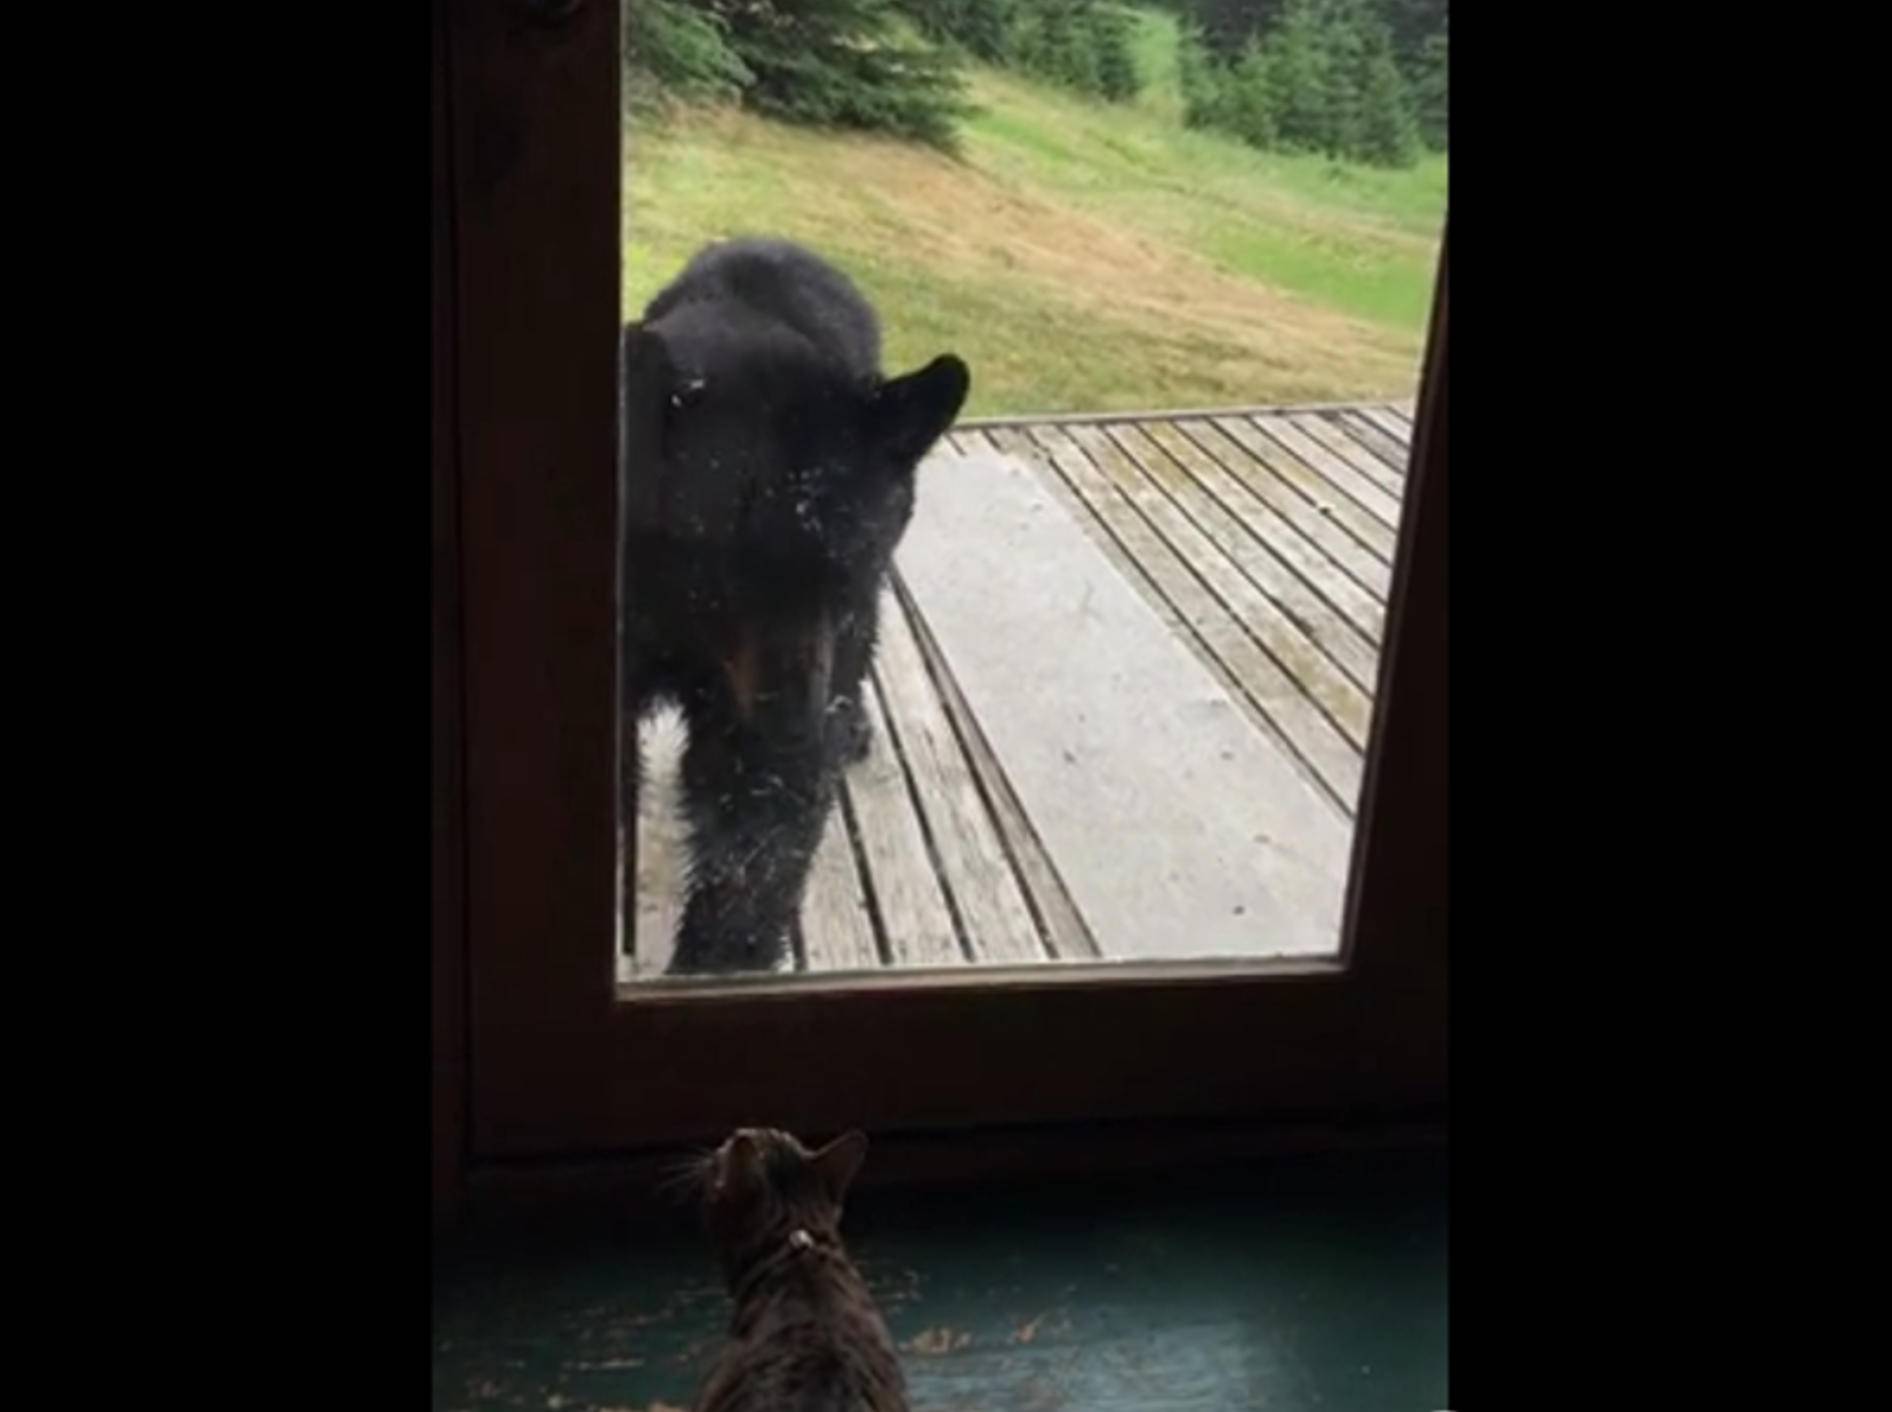 Katze vs. Bär: Wer ist der Herr des Hauses? – Bild: YouTube / Darlis Elliott